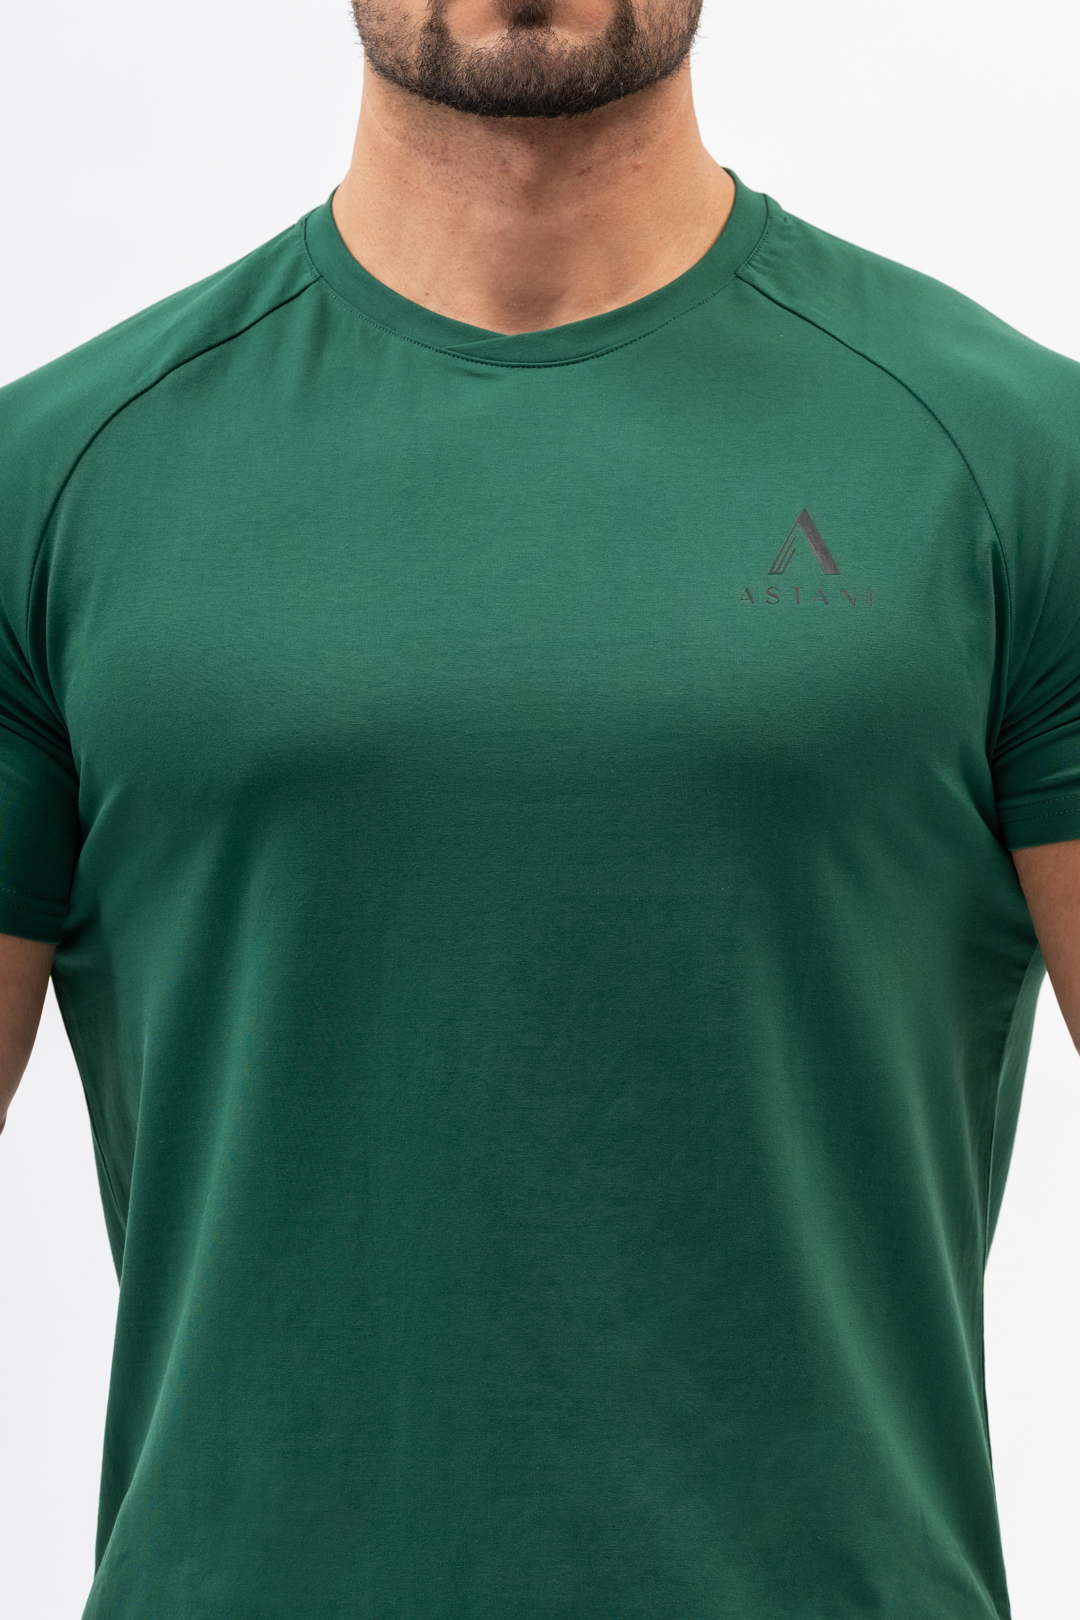 Code Dark Green Cotton Stretch Workout Gym Lifestyle T-Shirt